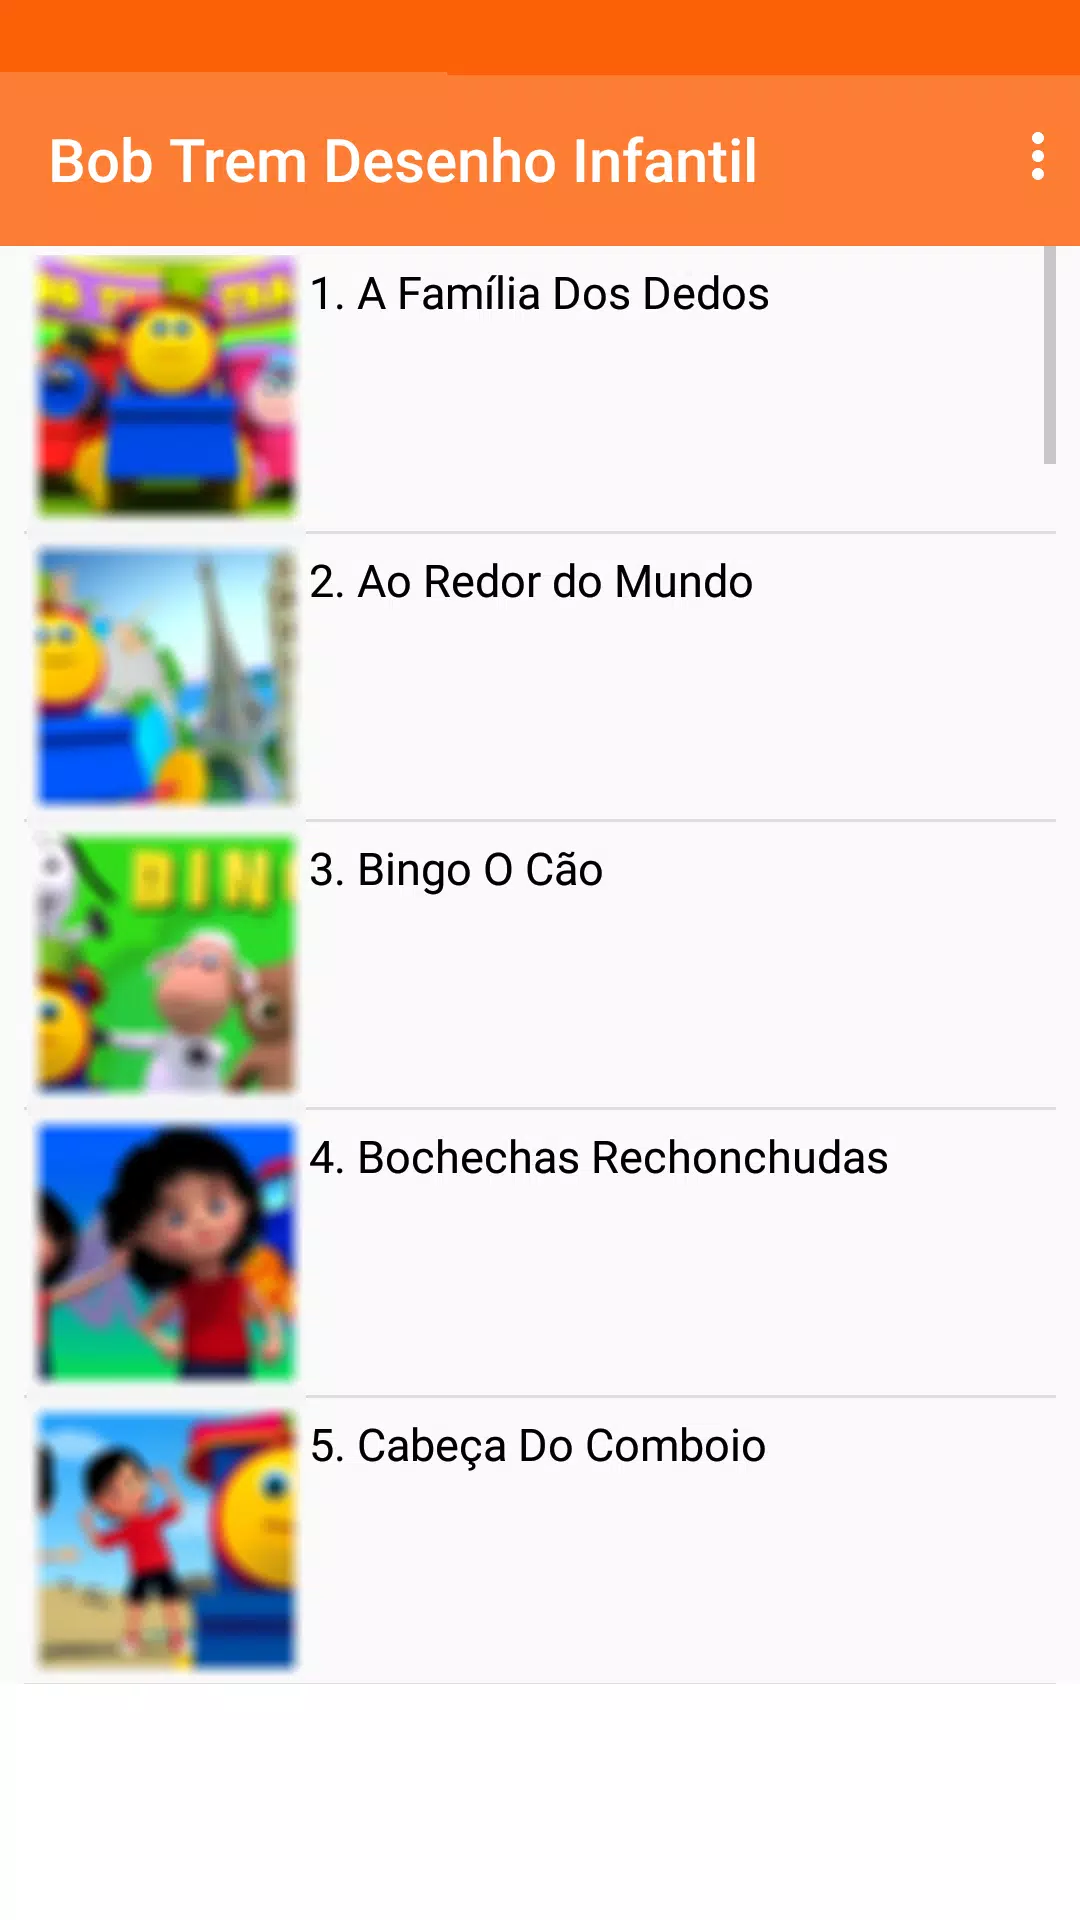 Bob o trem, número canção, musica infantil portuguesa, videos educativos